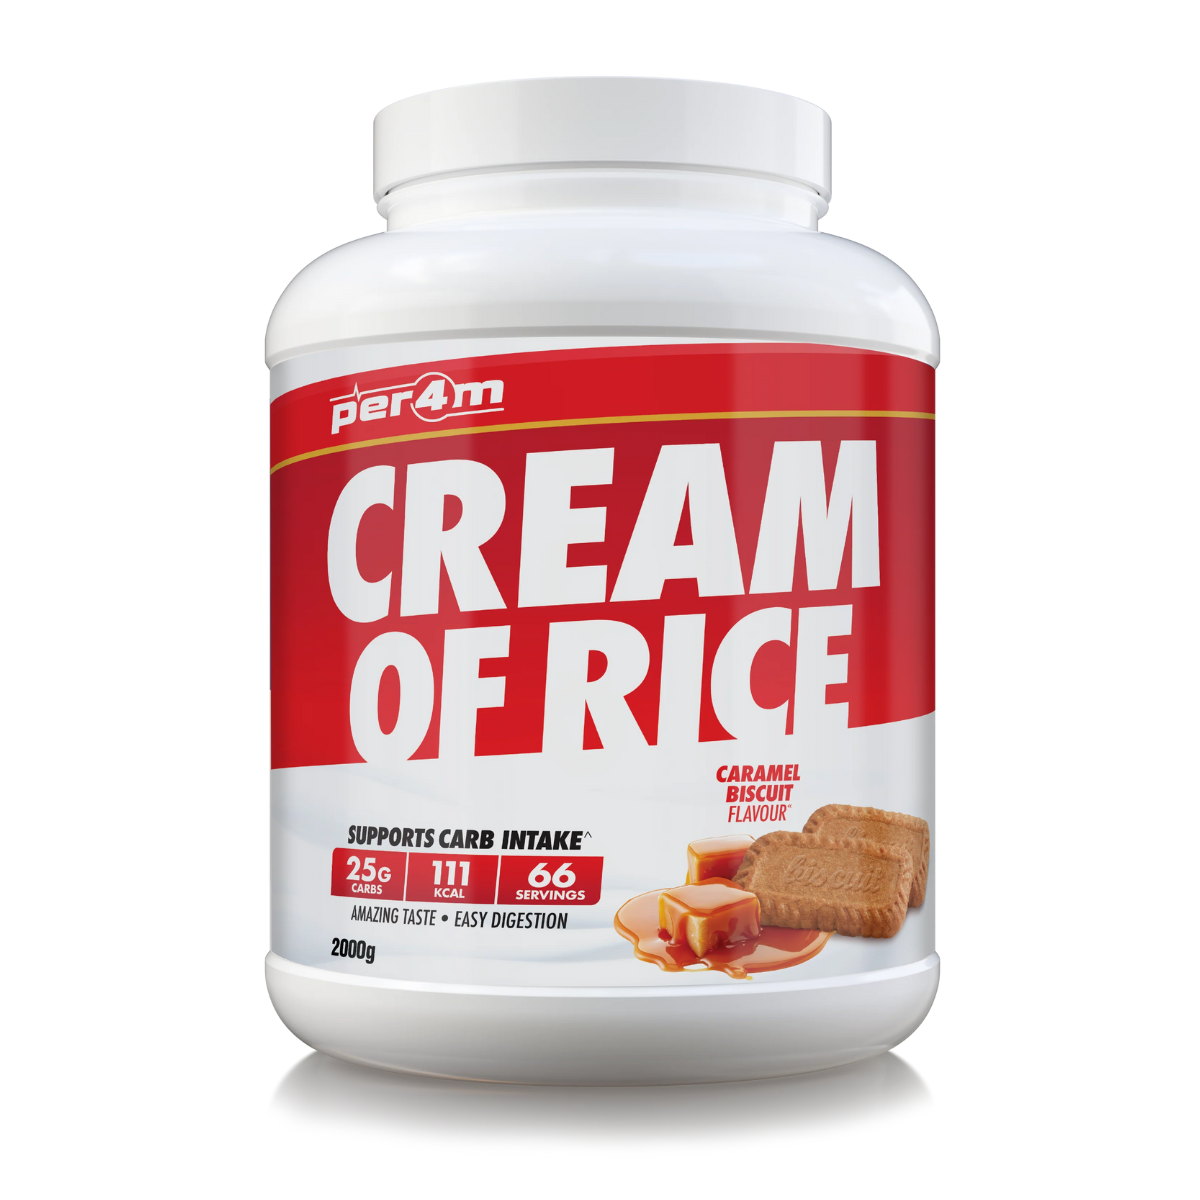 Per4m Crem of Rice 2kg